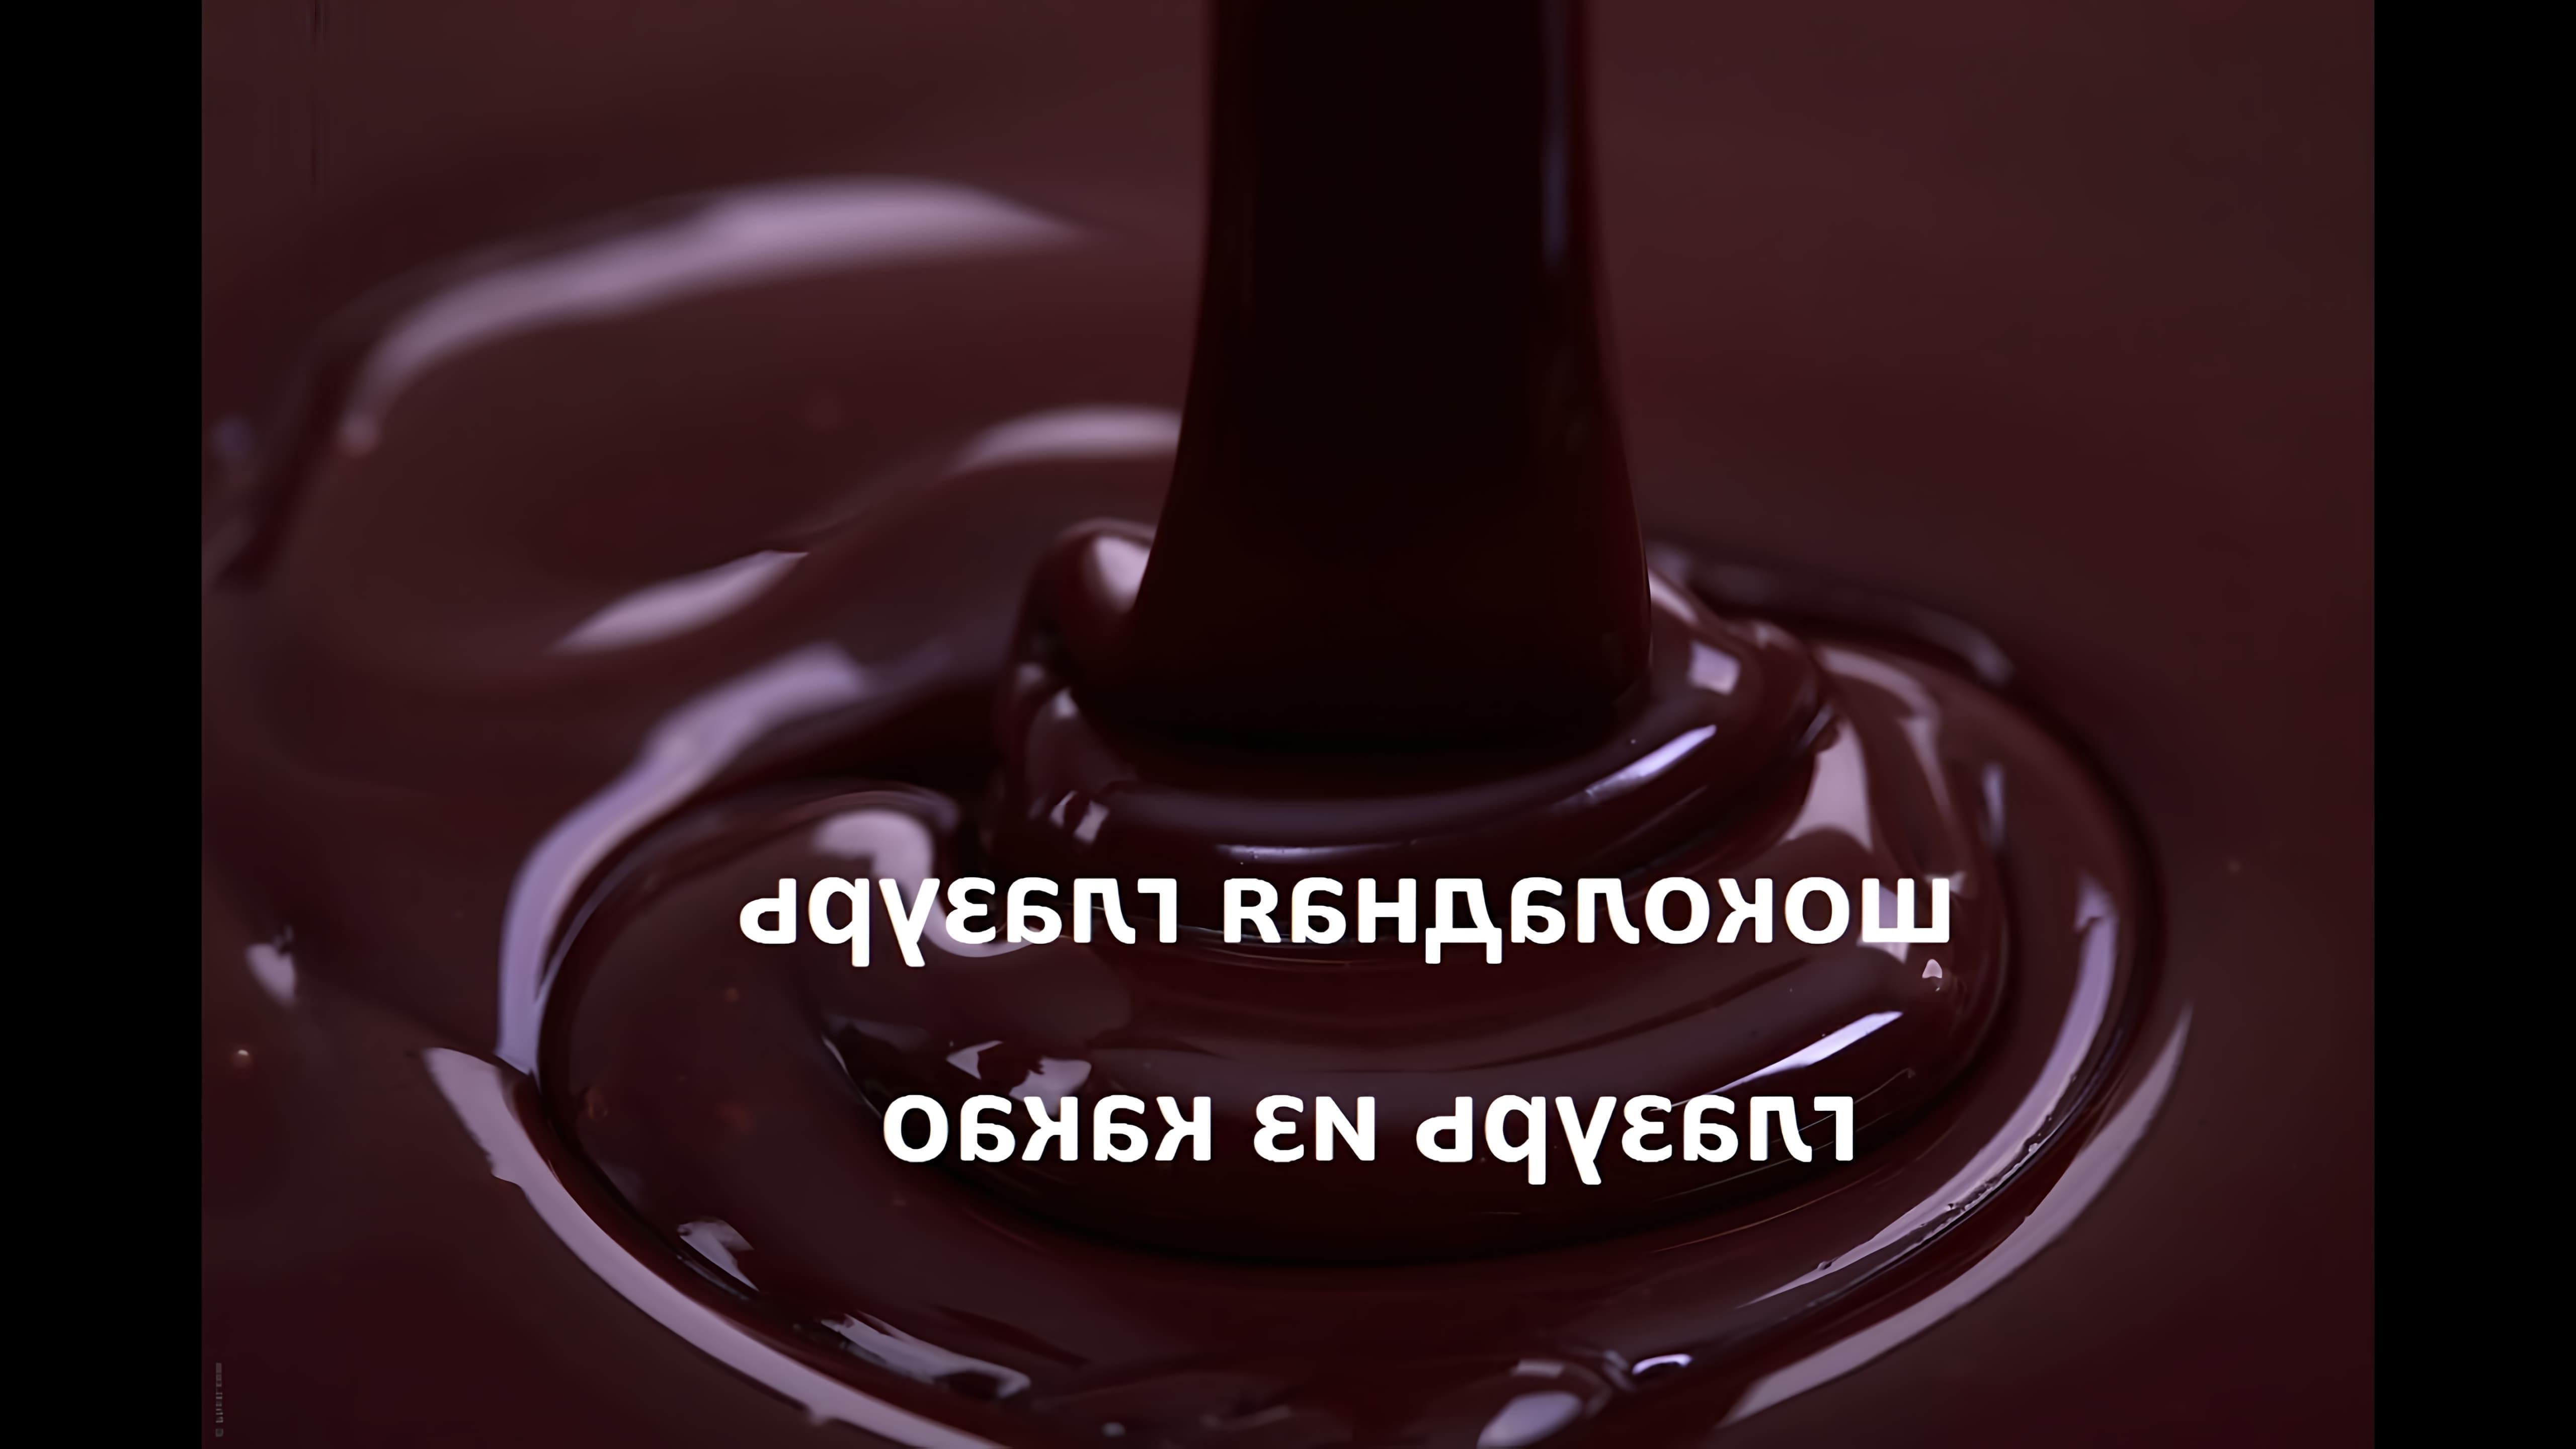 Видео как приготовить шоколадную глазурь дома, используя какао-порошок вместо готового шоколада